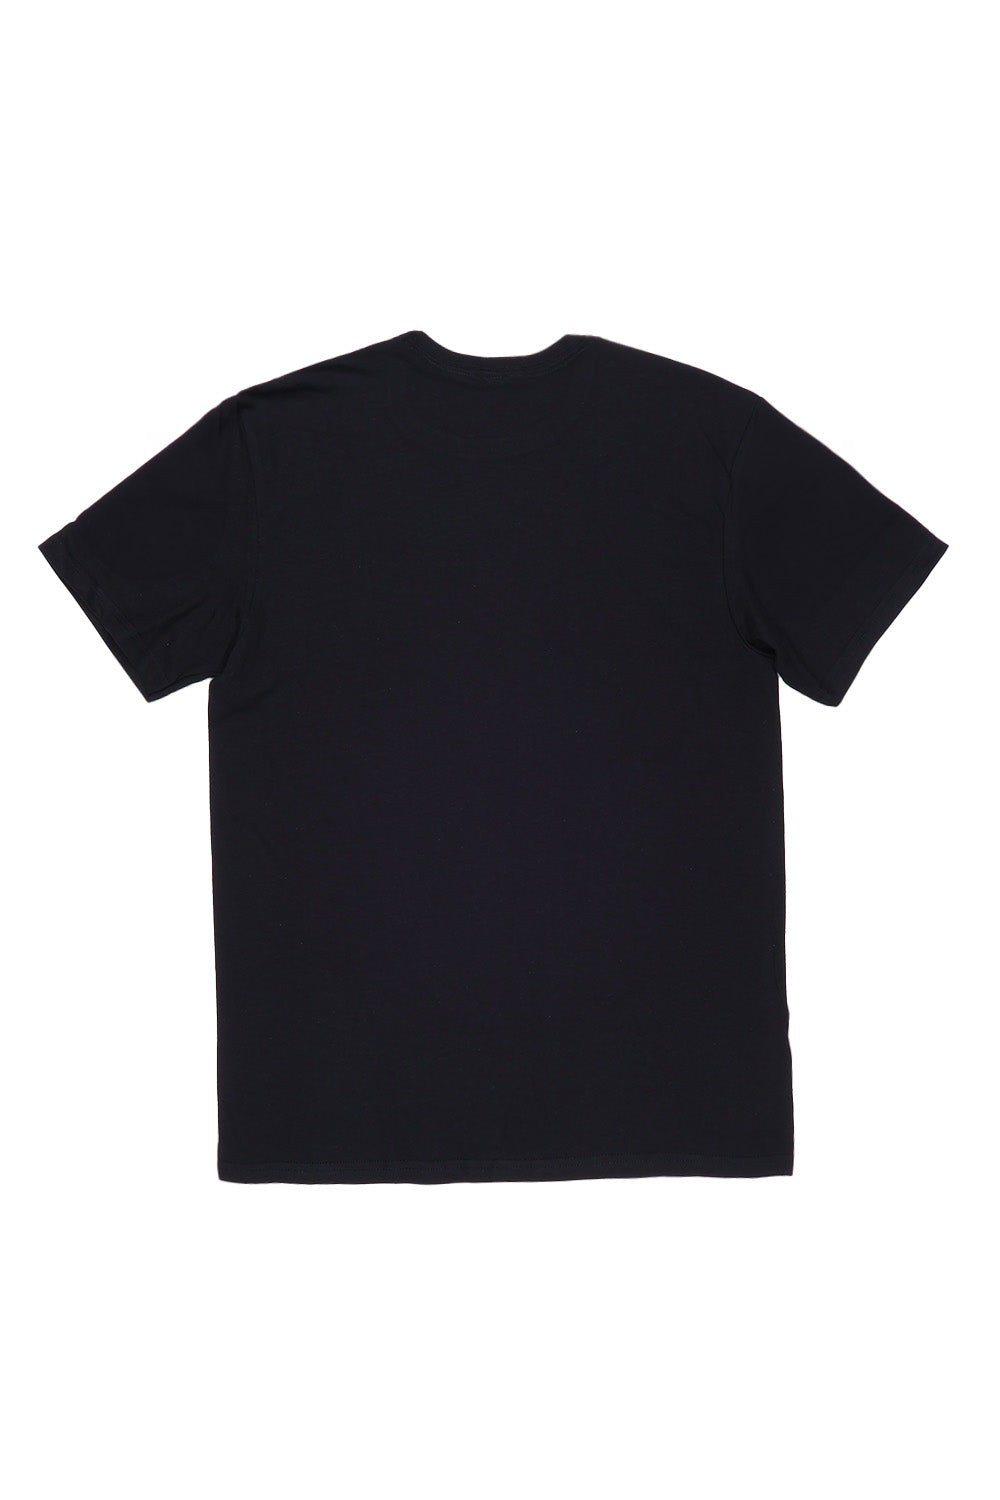 Cherry Chic T-Shirt in Black (Custom Packs)